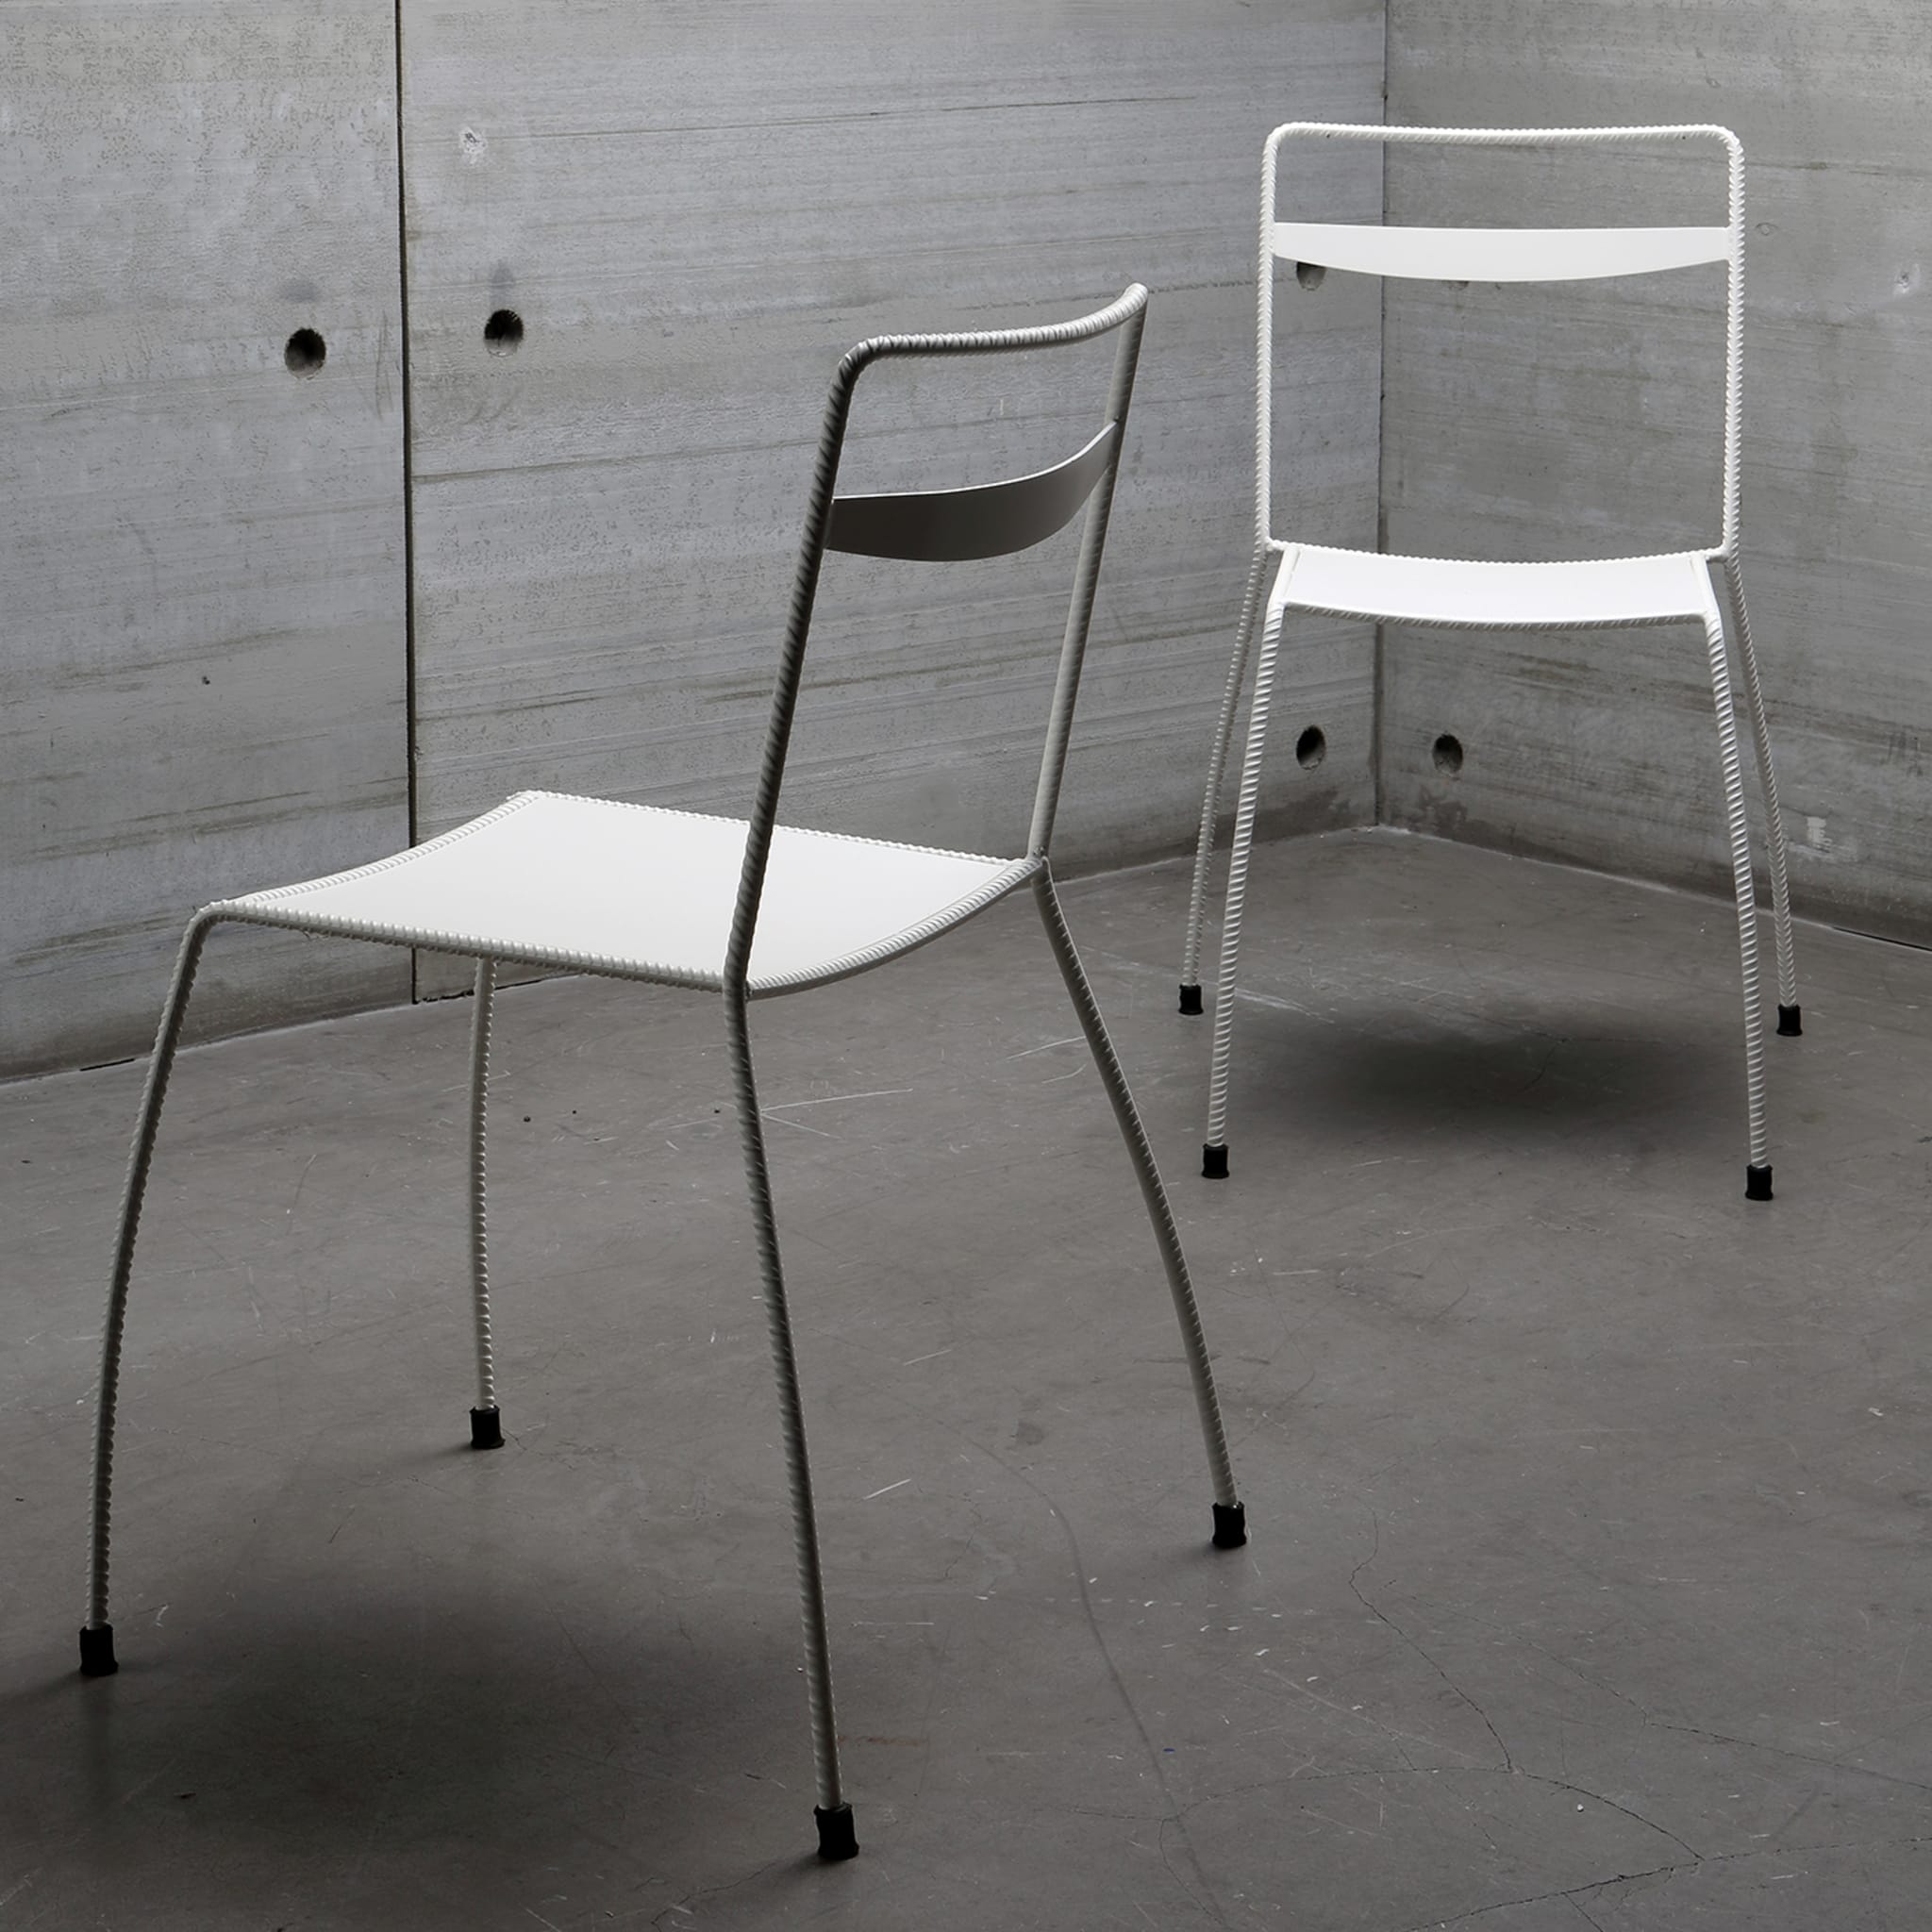 Tondella White Chair by Maurizio Peregalli - Alternative view 4